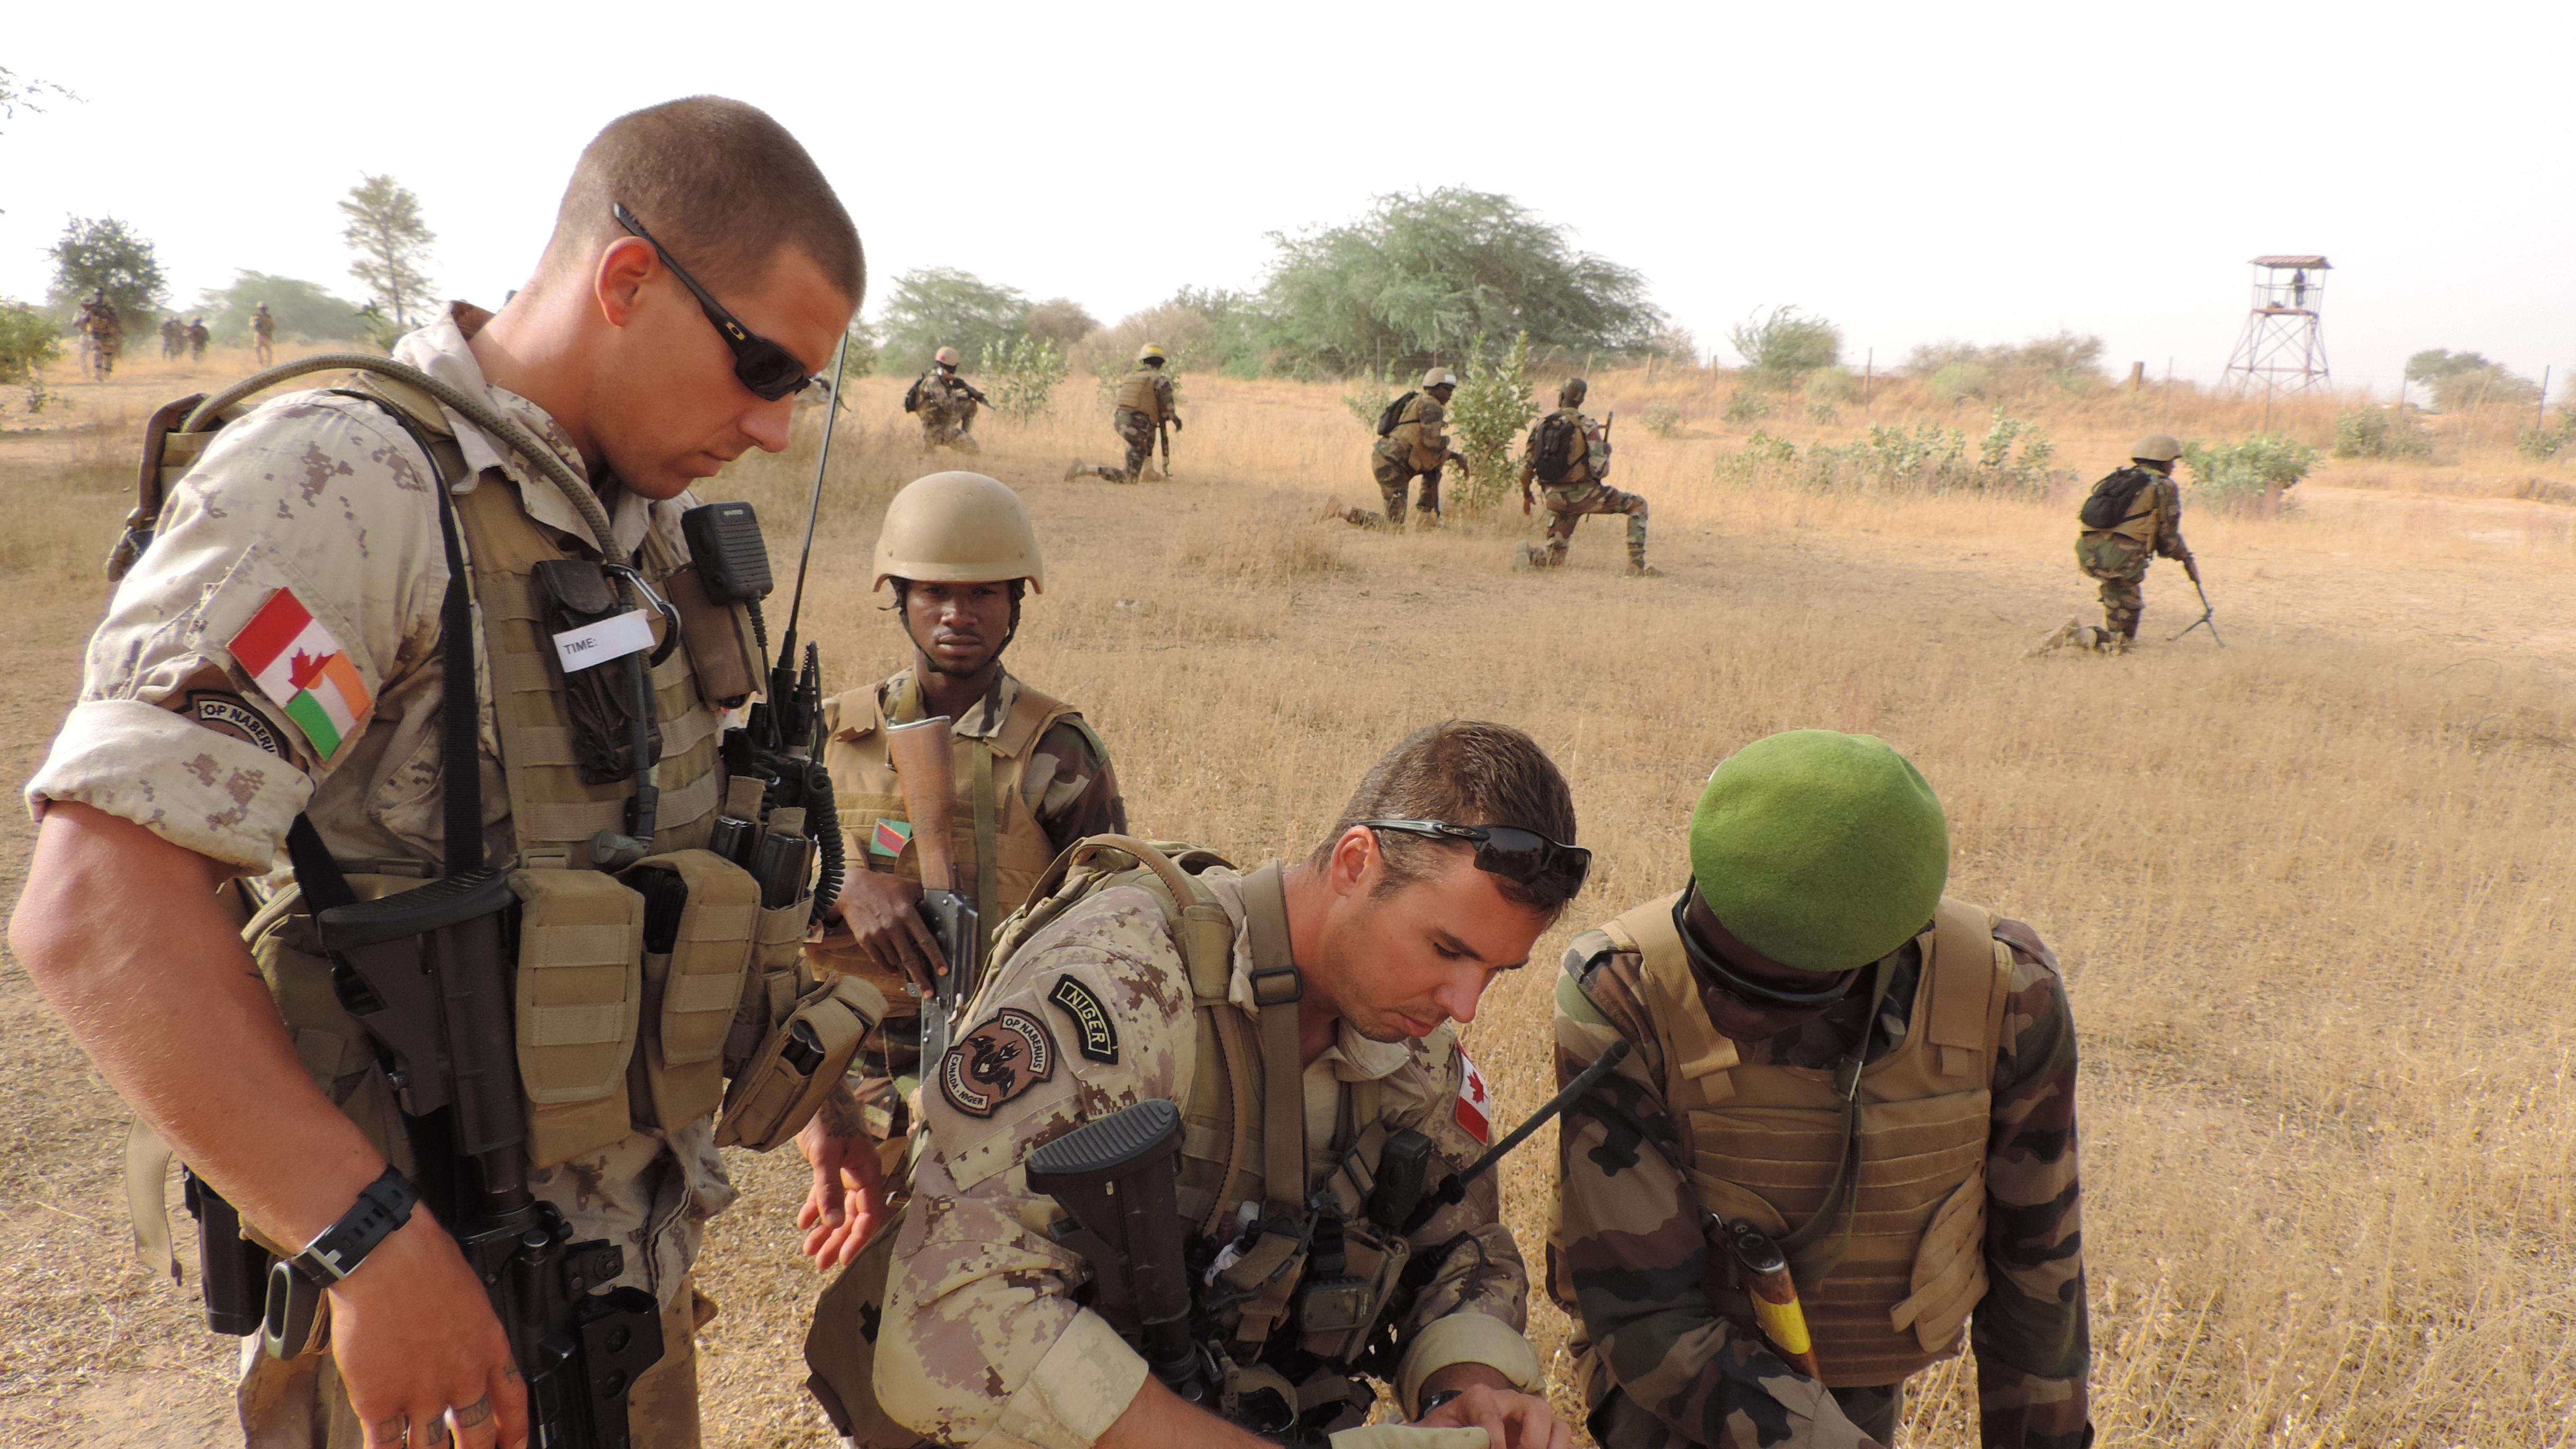 Des membres des Forces armées canadiennes encadrent des membres des Forces armées nigériennes qui effectuent une patrouille au niveau du peloton pendant l’opération NABERIUS 2017 au Niger. (Photo : Op NABERIUS 201702)